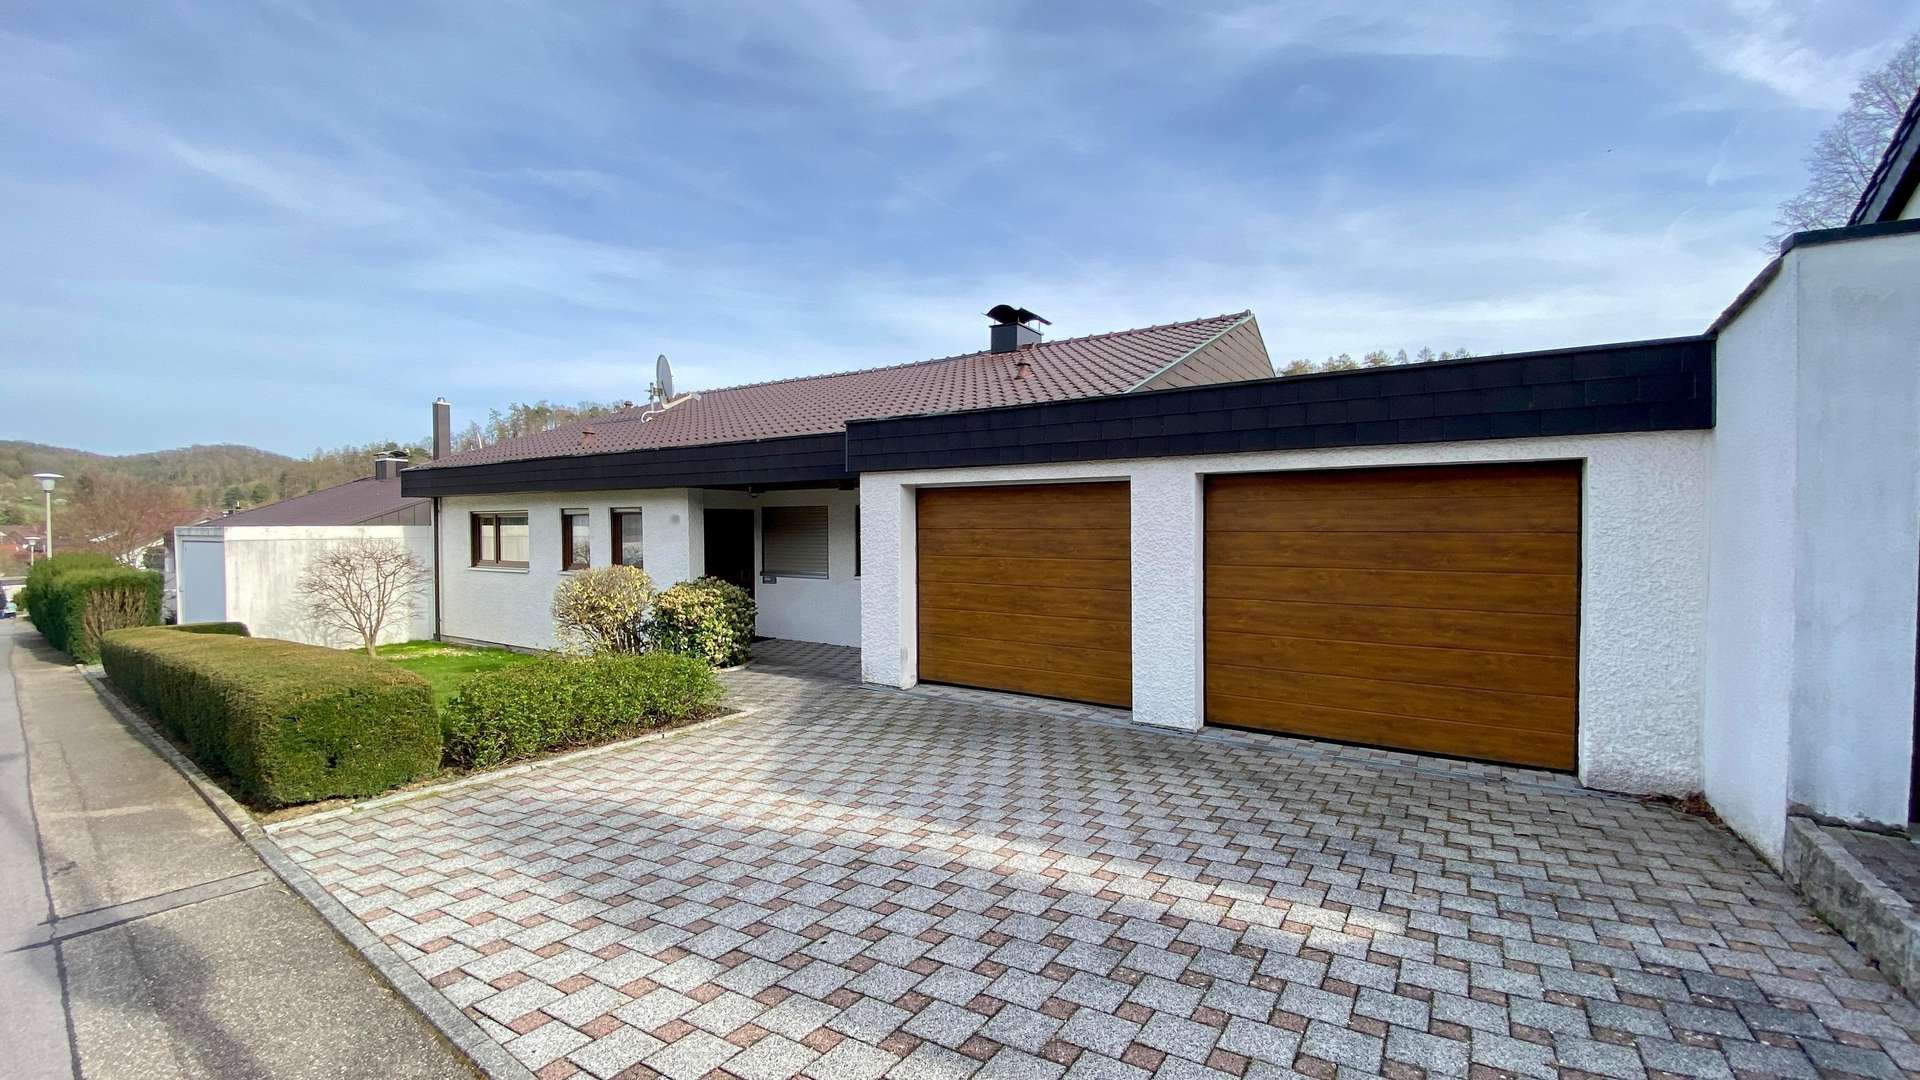 null - Einfamilienhaus in 74199 Untergruppenbach mit 213m² kaufen